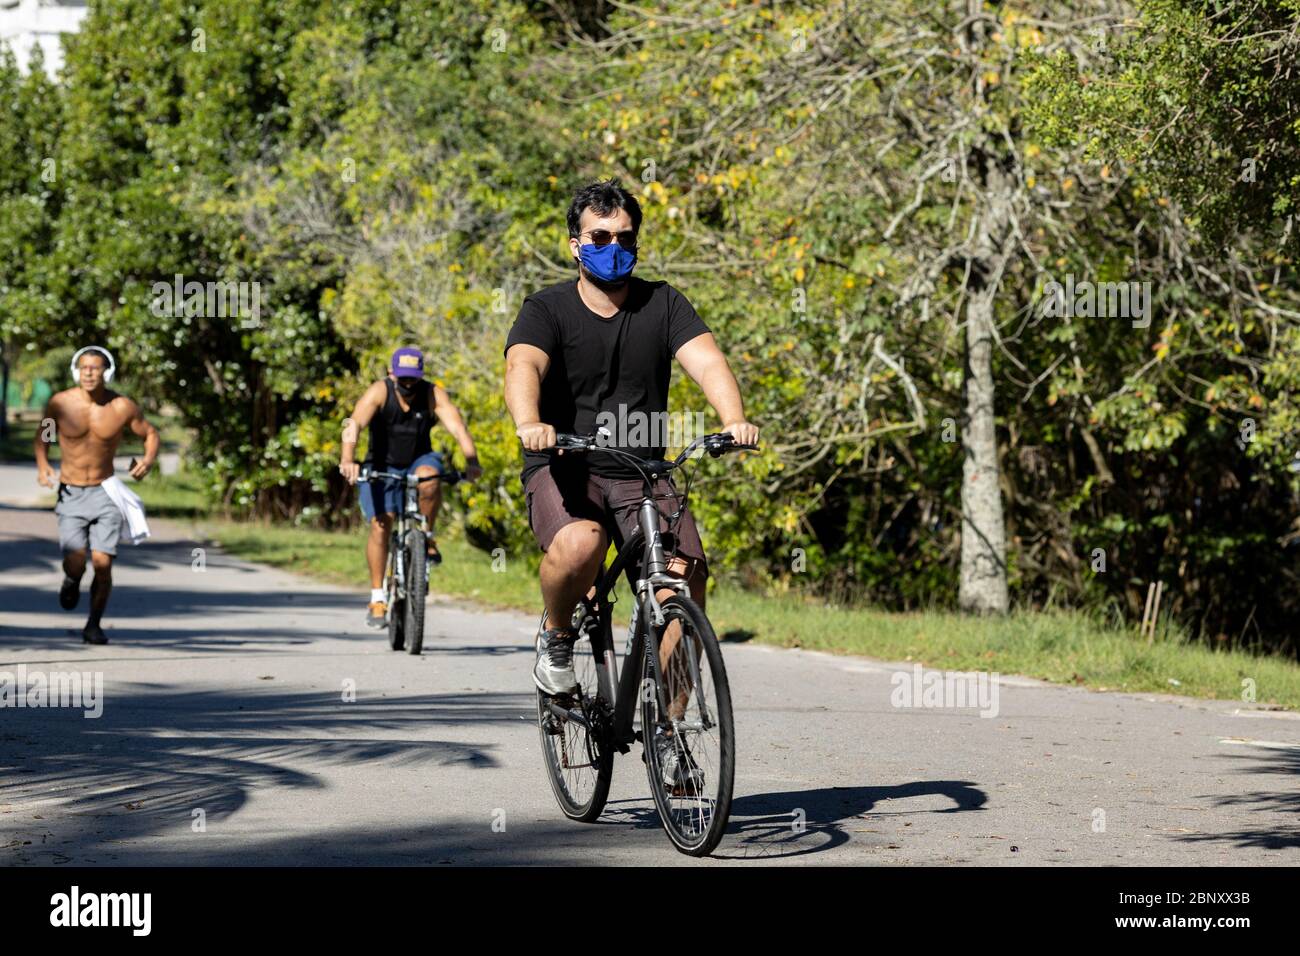 Les gens qui font du vélo et font de l'exercice dans un parc municipal pendant l'épidémie de virus Corona COVID-19 Banque D'Images